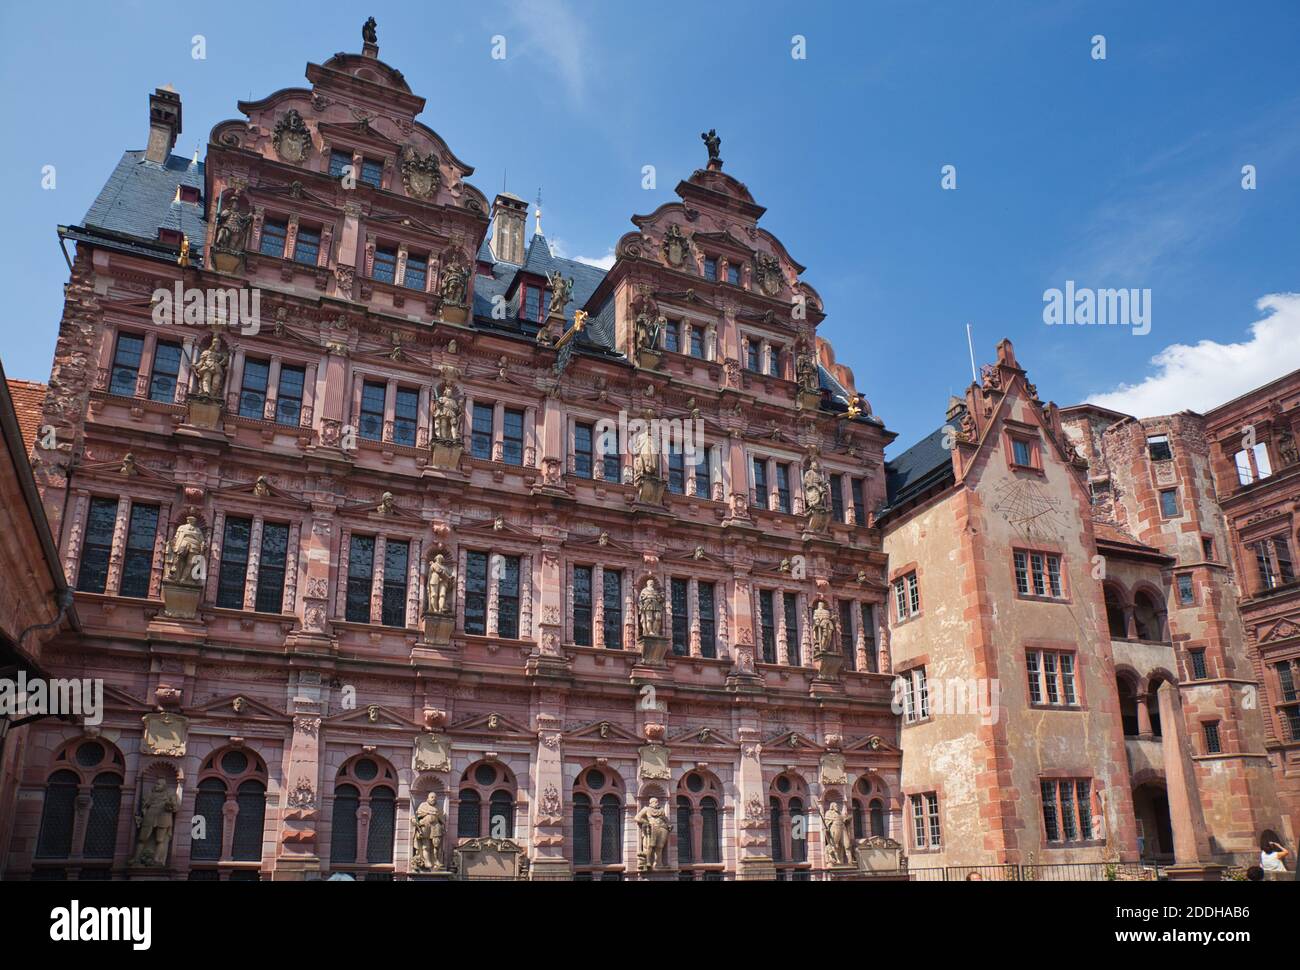 Facciata molto ornata di un edificio a Heidelberg, nello stato del Baden-Württemberg, in Germania, con figure intagliate tra le finestre Foto Stock